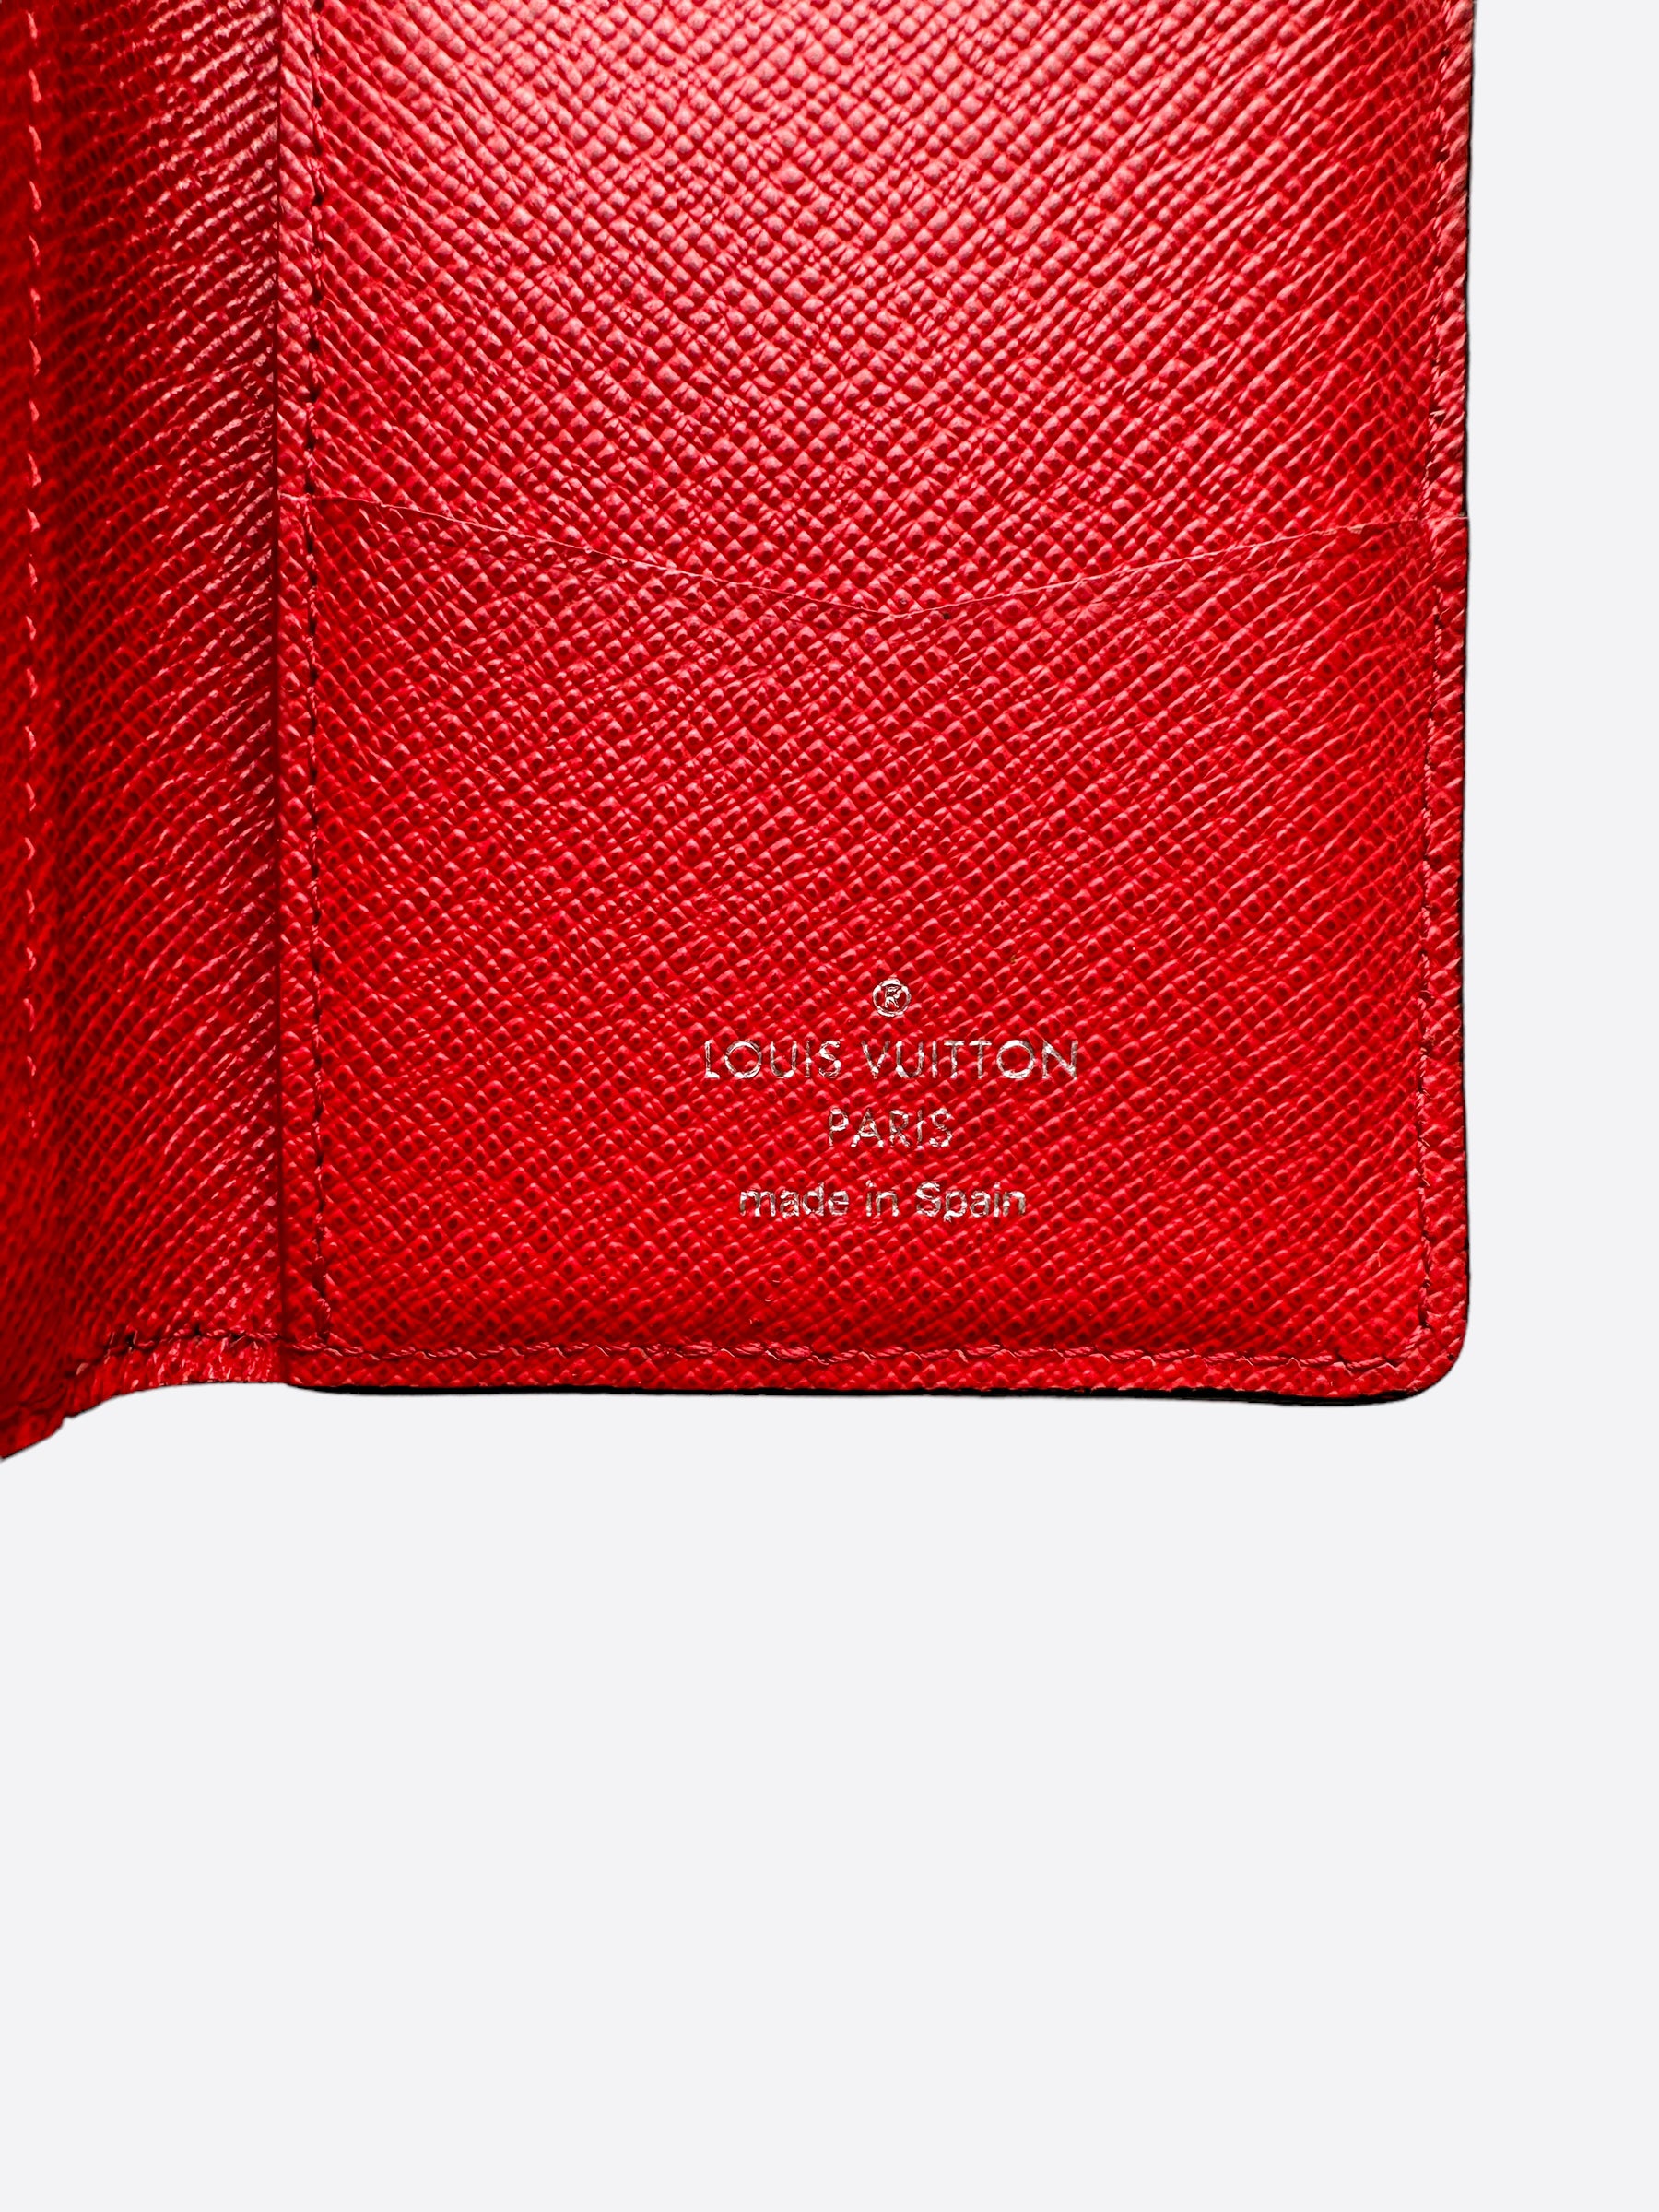 Louis Vuitton Supreme Black EPI Brazza Wallet – Savonches